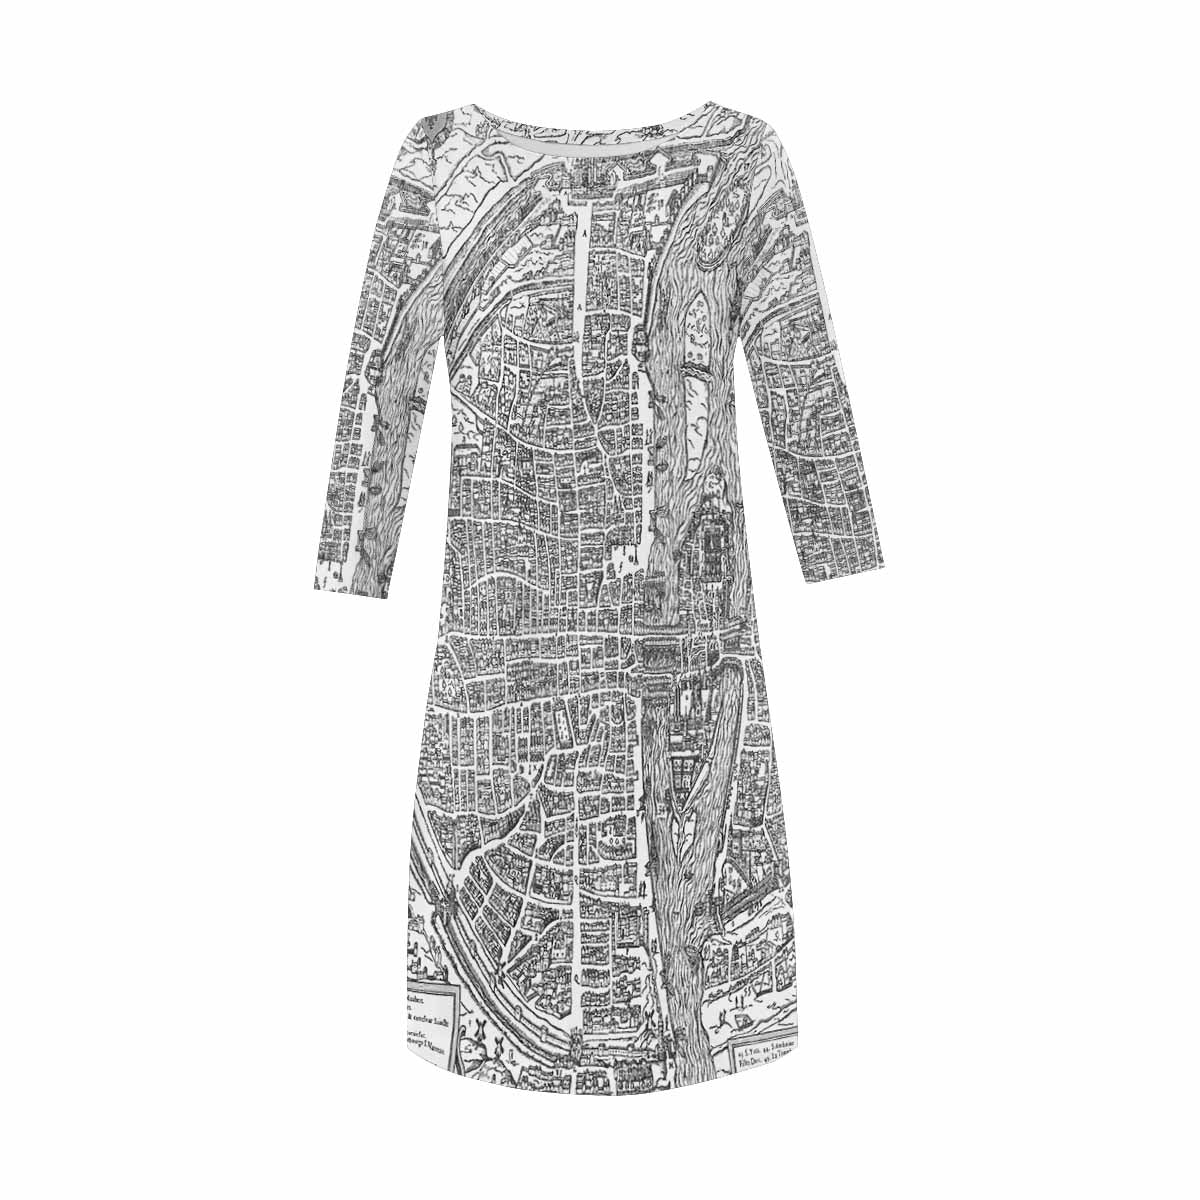 Antique Map loose dress, MODEL 29532, design 42